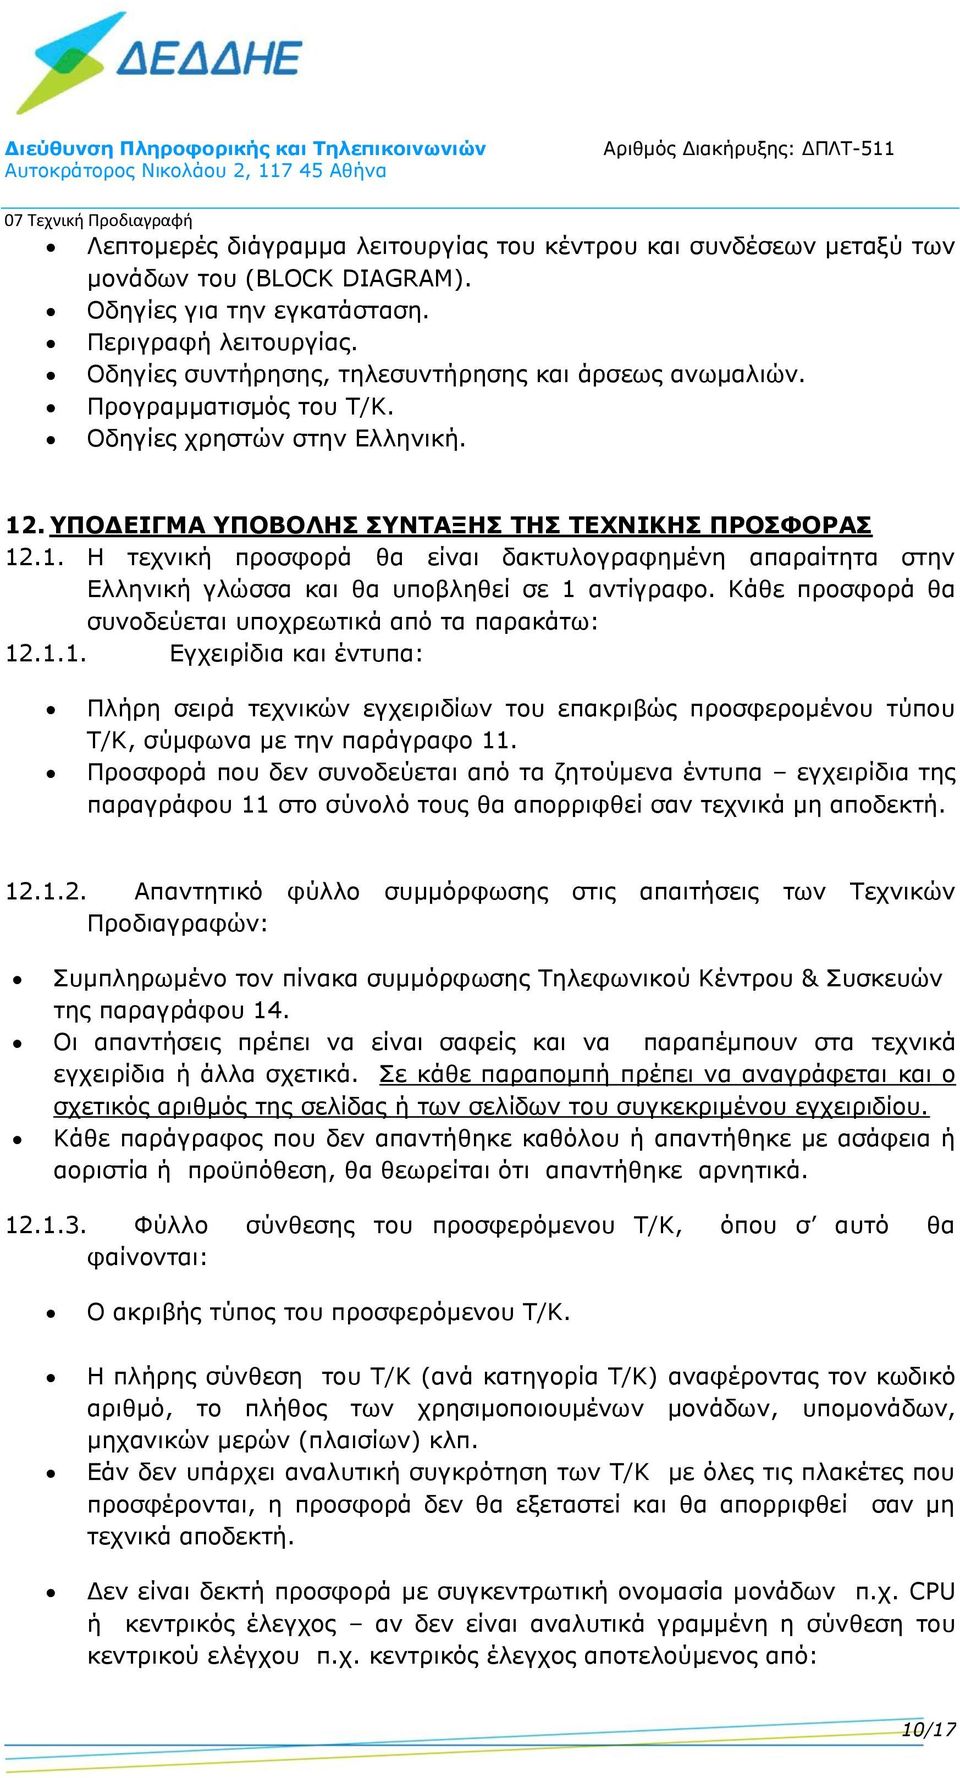 . ΥΠΟΔΕΙΓΜ ΥΠΟΒΟΛΣ ΣΥΝΤΞΣ ΤΣ ΤΕΧΝΙΚΣ ΠΡΟΣΦΟΡΣ 12.1. τεχνική προσφορά θα είναι δακτυλογραφημένη απαραίτητα στην Ελληνική γλώσσα και θα υποβληθεί σε 1 αντίγραφο.